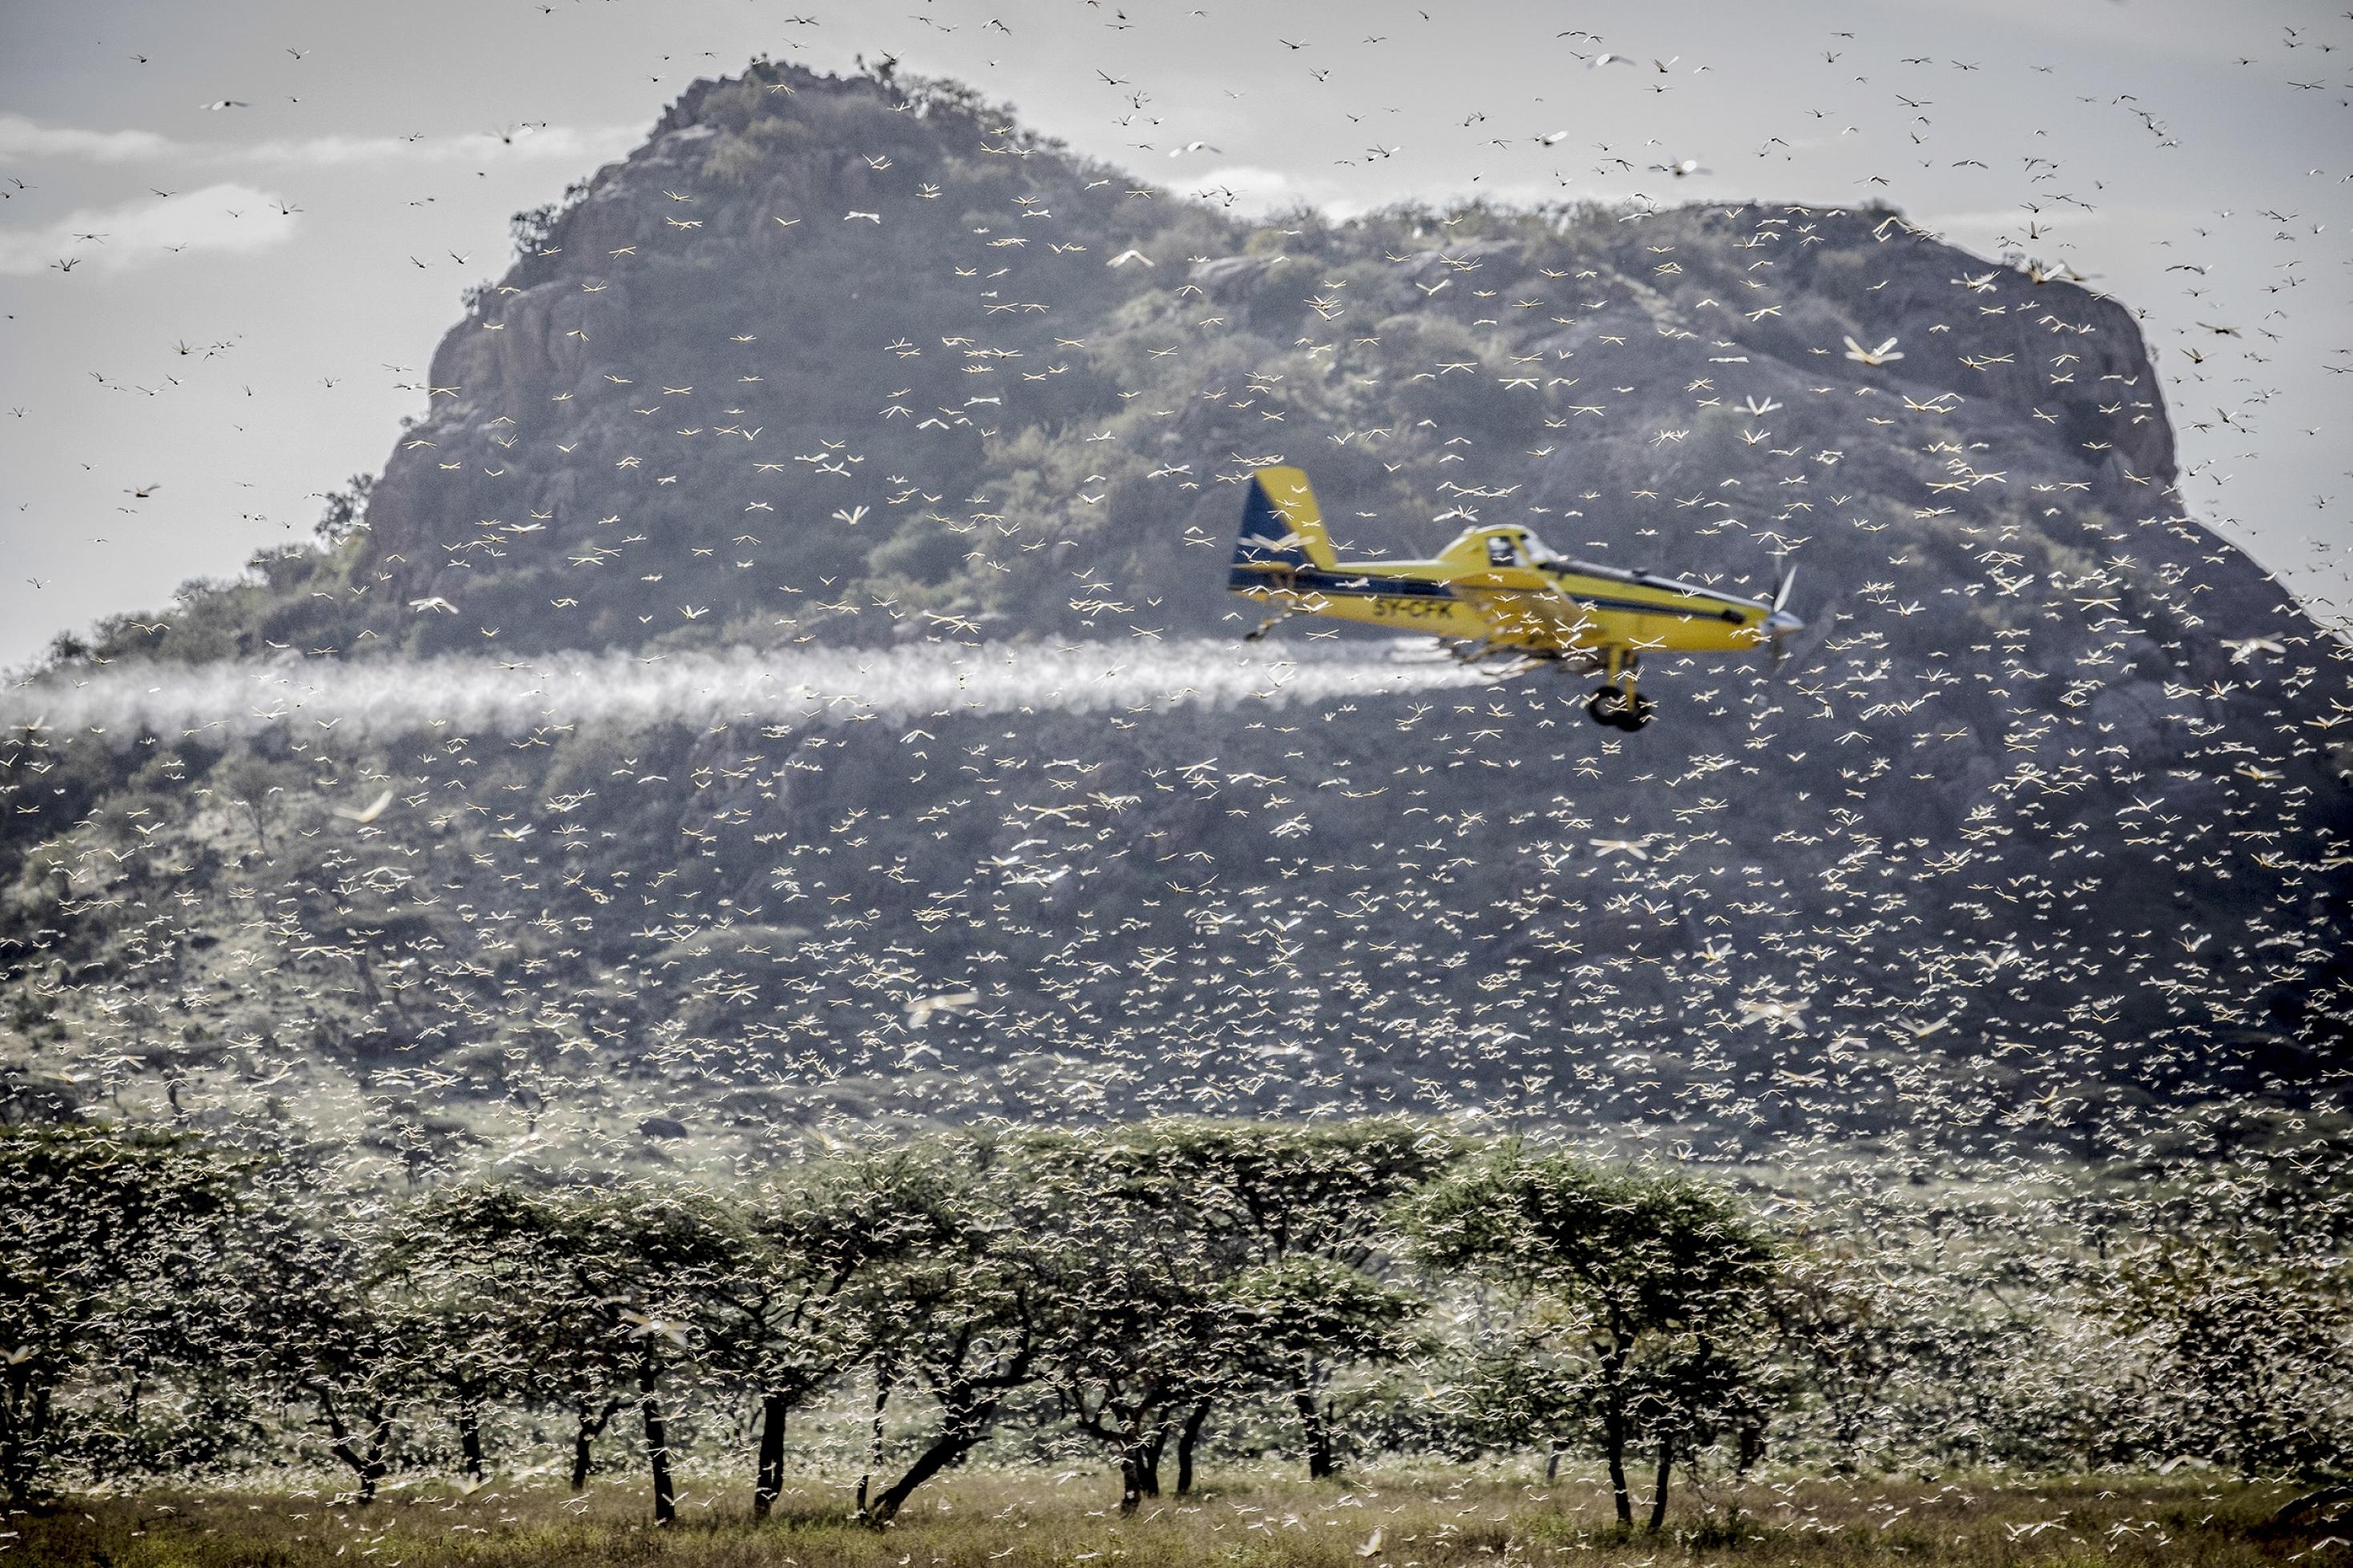 Vor einem Berg als Hintergrund fliegt ein kleines gelbes Flugzeug inmitten eines Heuschreckenschwarms und versprüht Insektenbekämpfungsmittel.